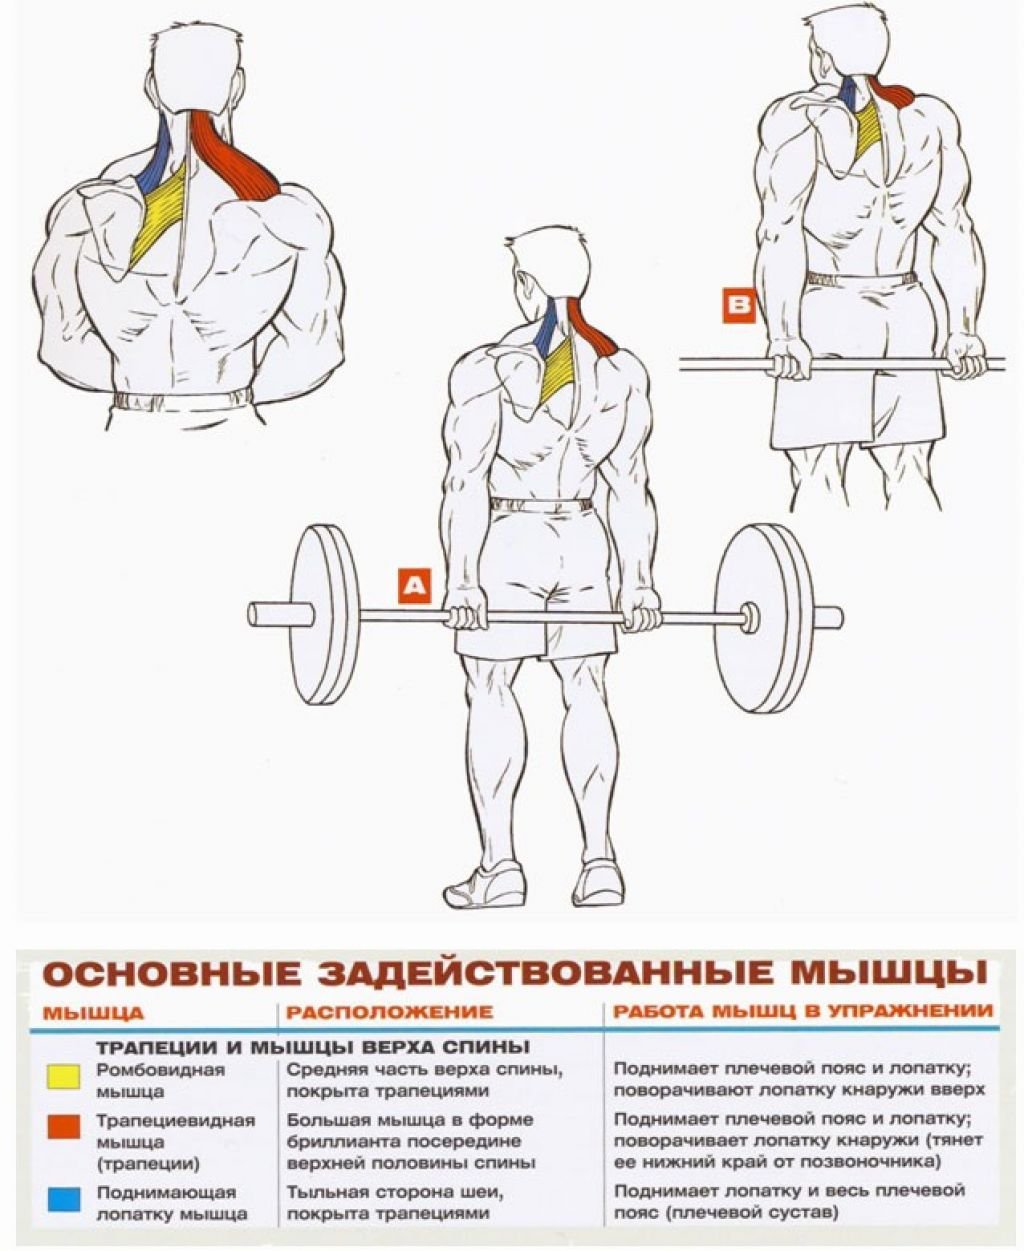 Ромбовидная мышца спины упражнения